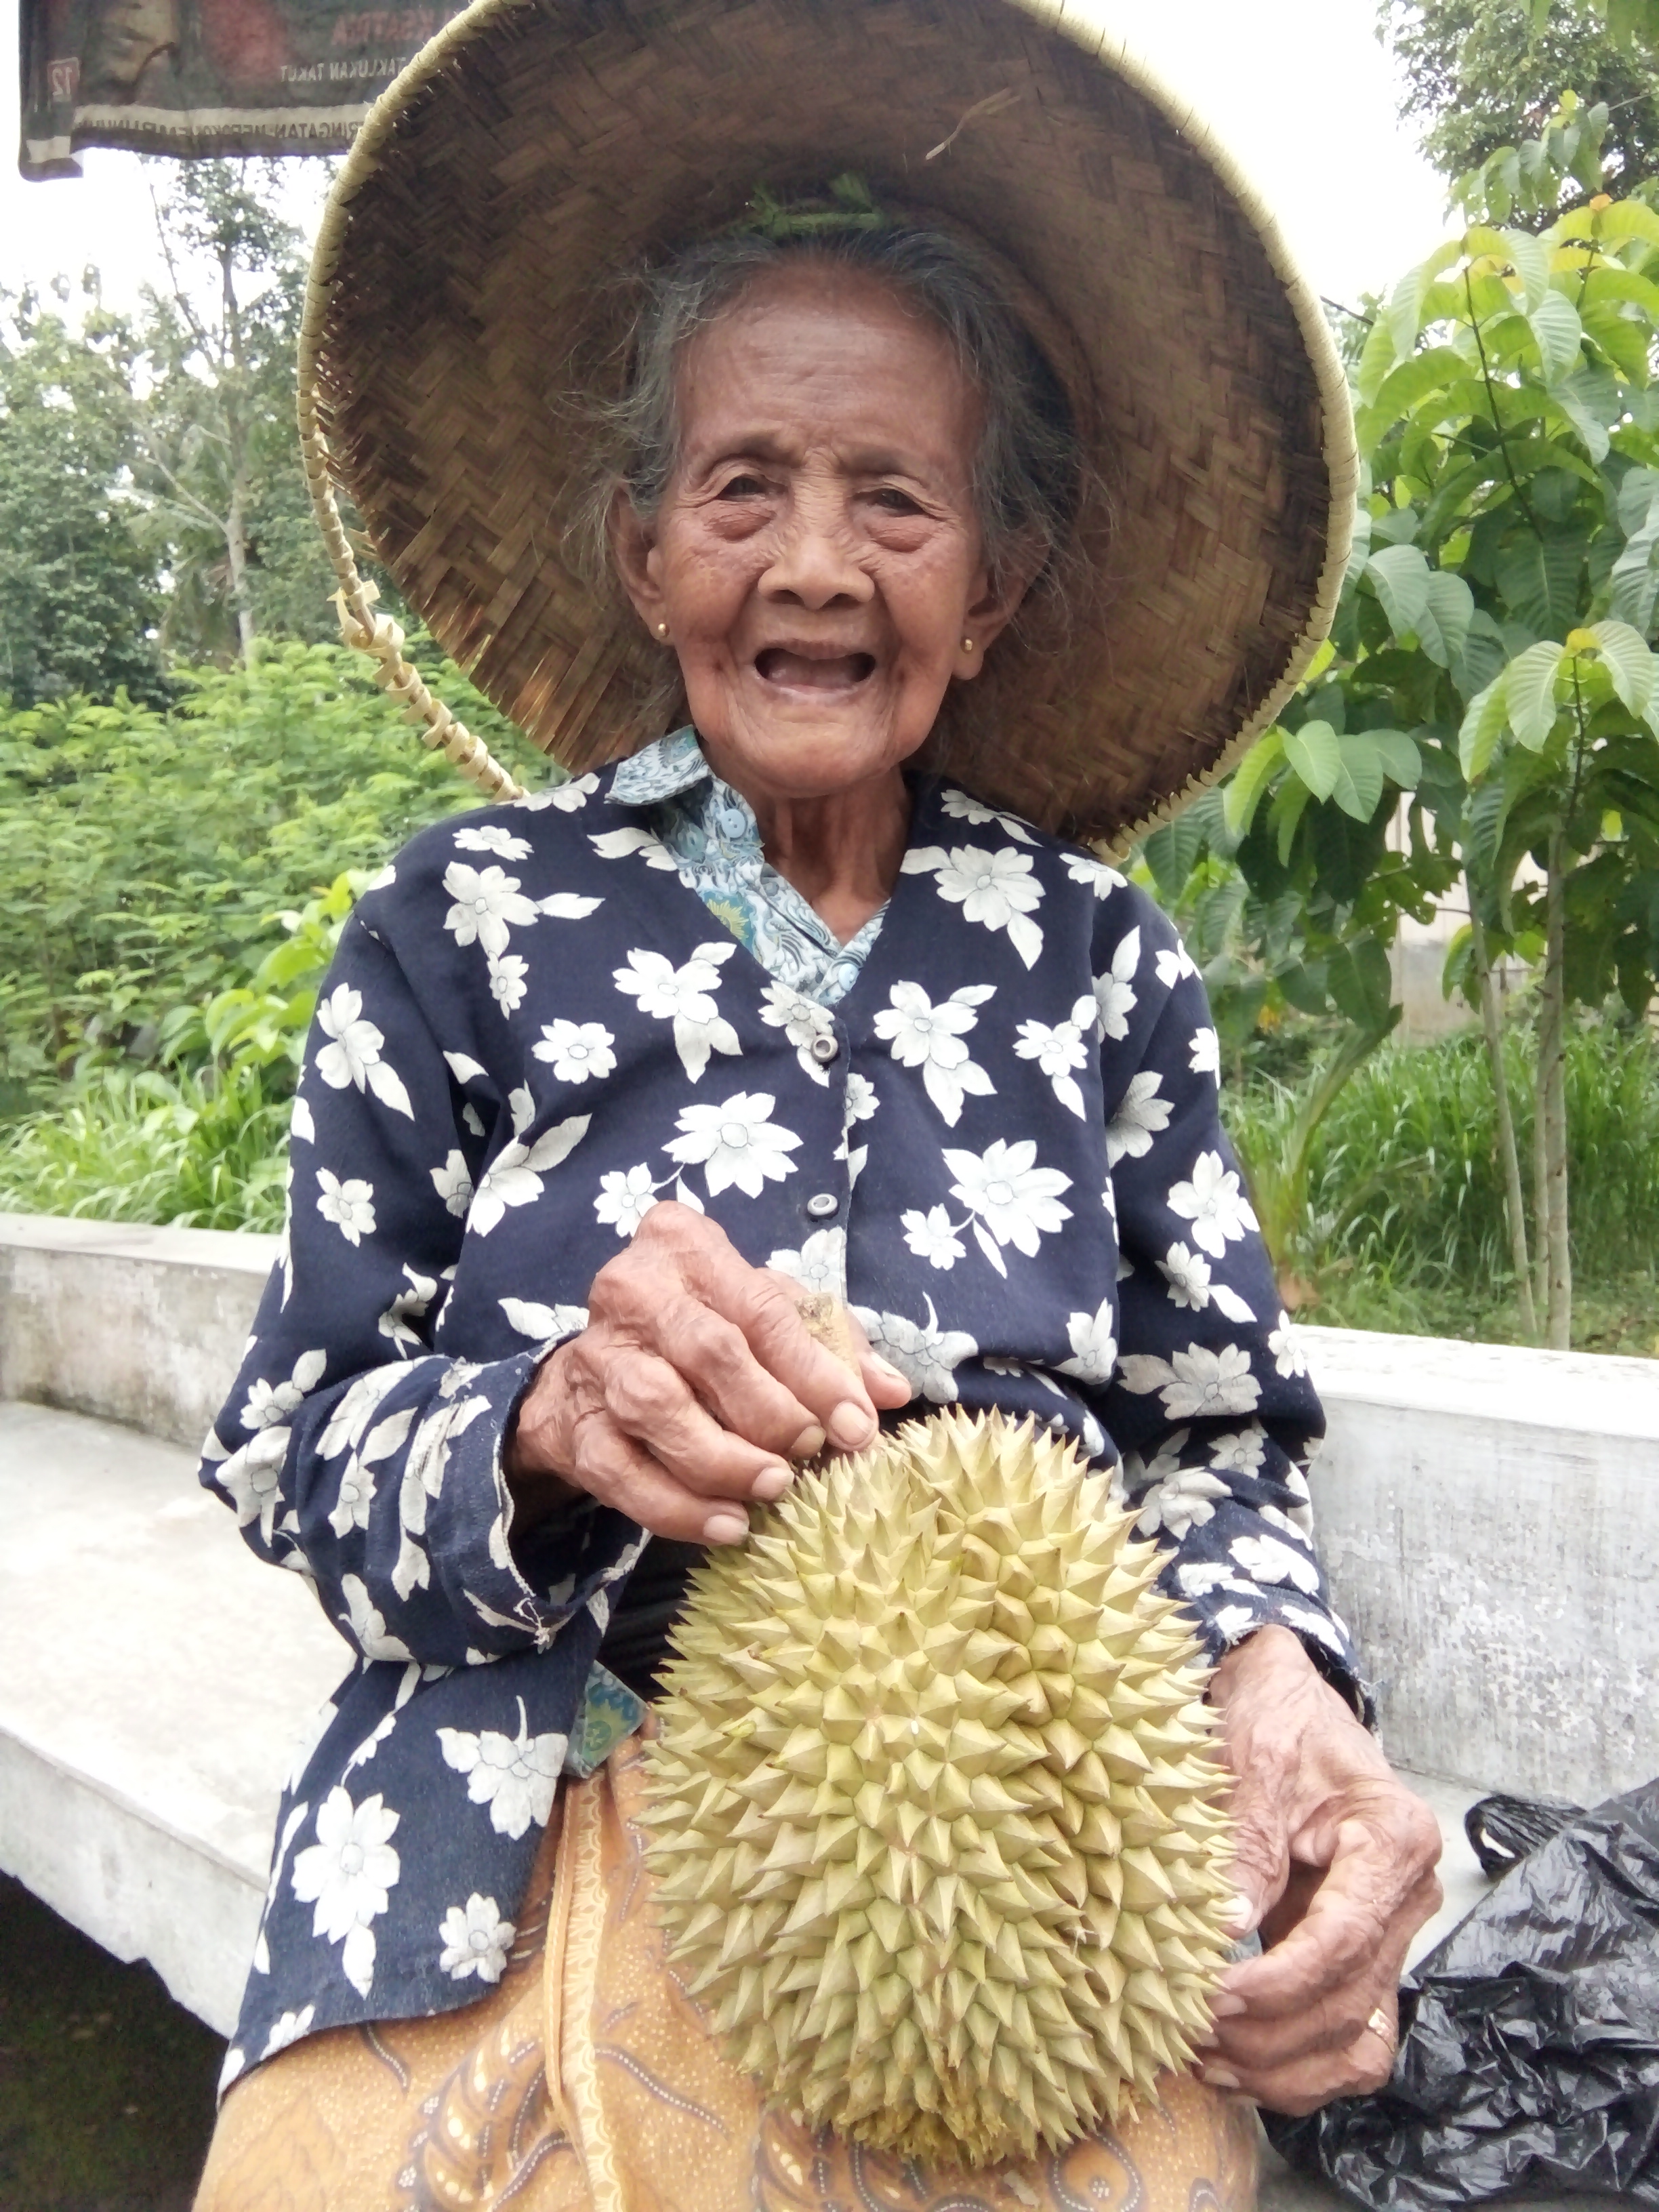 Sepuh masih bekerja keras, gendong durian dan pisang. foto:widikamidi 